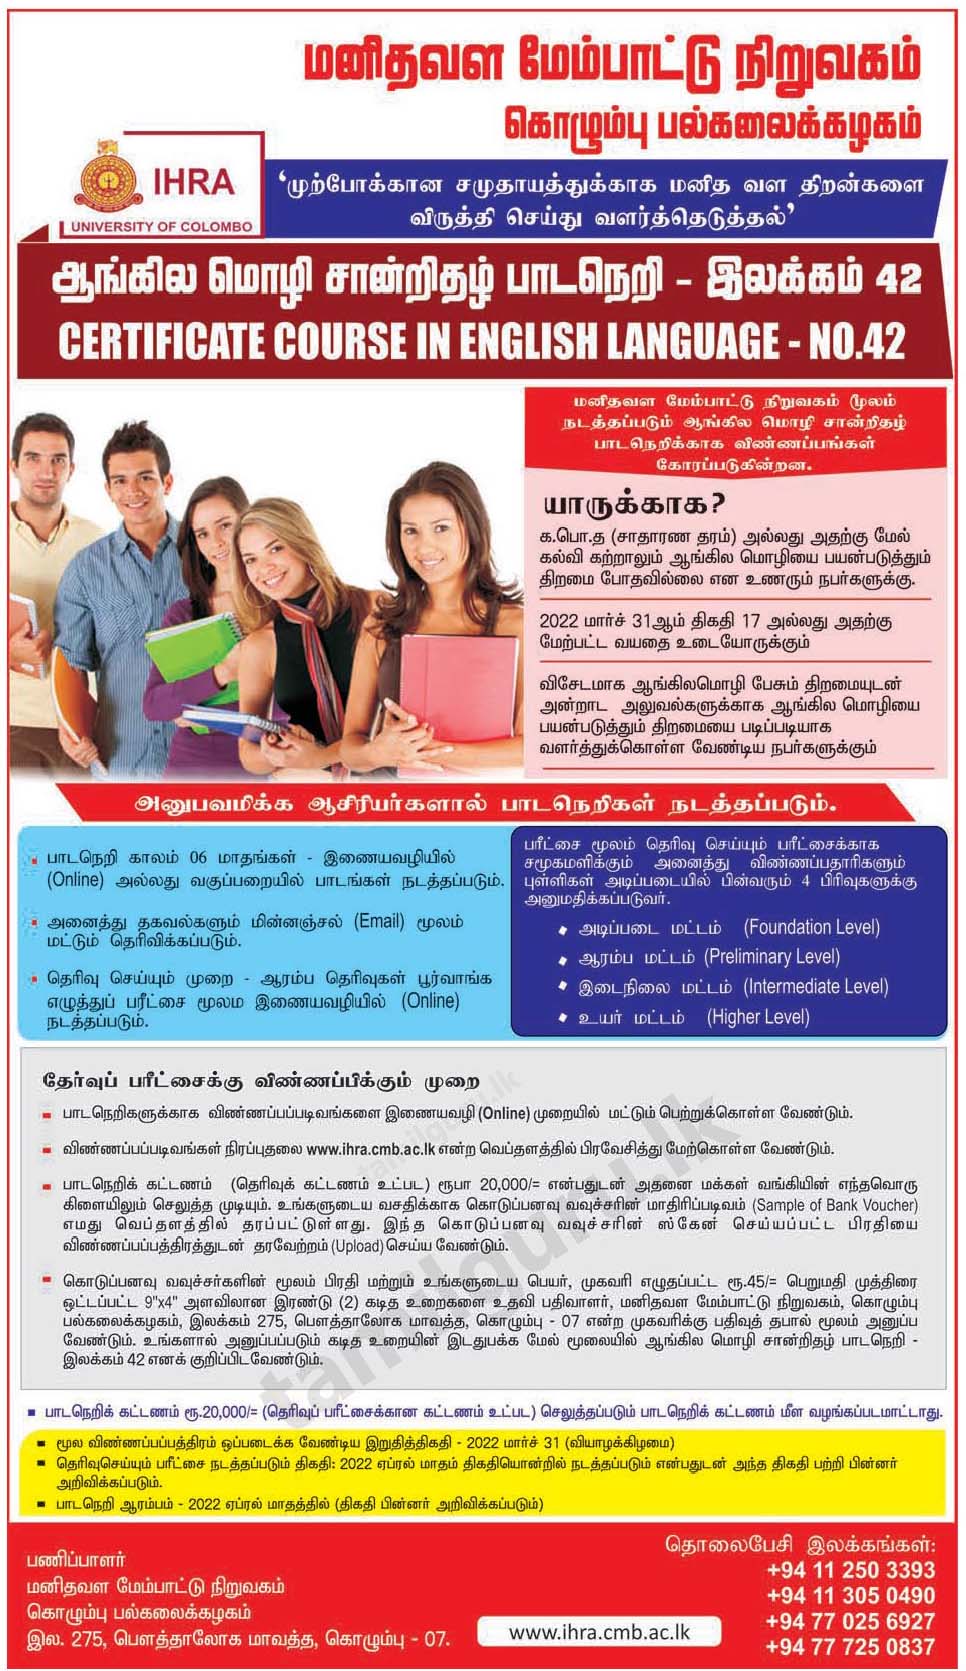 Certificate Course in English Language 2022 (No 42) - University of Colombo / ஆங்கில மொழி சான்றிதழ் பாடநெறி - கொழும்பு பல்கலைக்கழகம் 